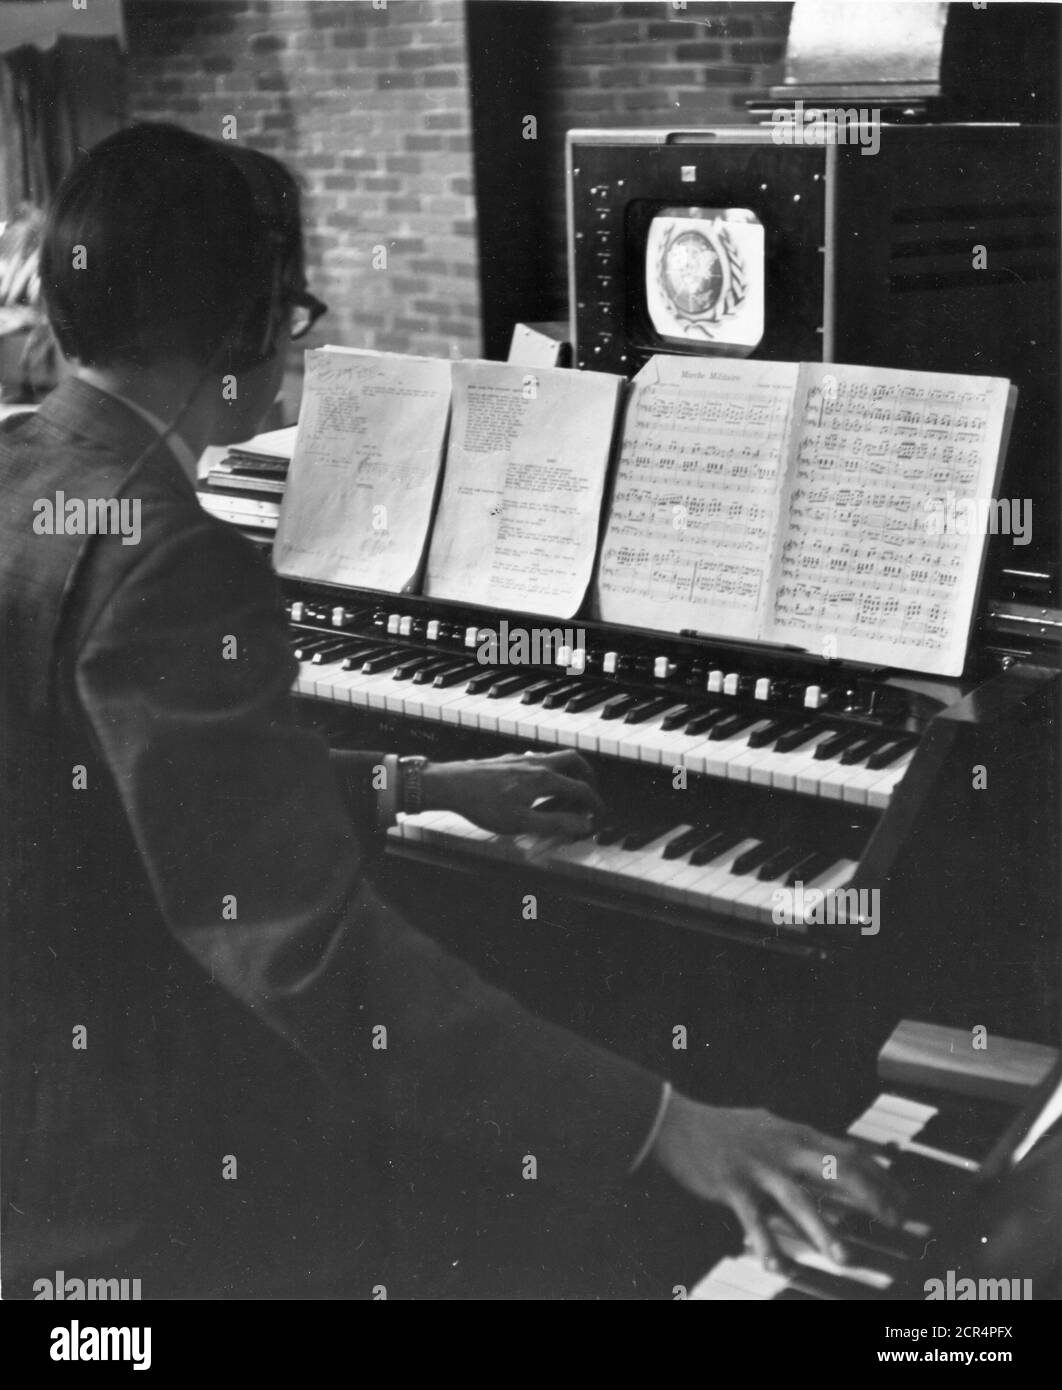 Der Organist, der Hintergrundmusik für eine Fernsehsendung liefert, sieht das Bild auf dem Monitor über der Orgel, hört Signale aus dem Kontrollraum über Kopfhörer, hat sowohl ein Skript als auch eine musikalische Partitur zu sehen und beide Hände voll zu bedienen zwei Tastaturen, New York, NY, 7/1/1949. (Foto von RBM Vintage Images) Stockfoto